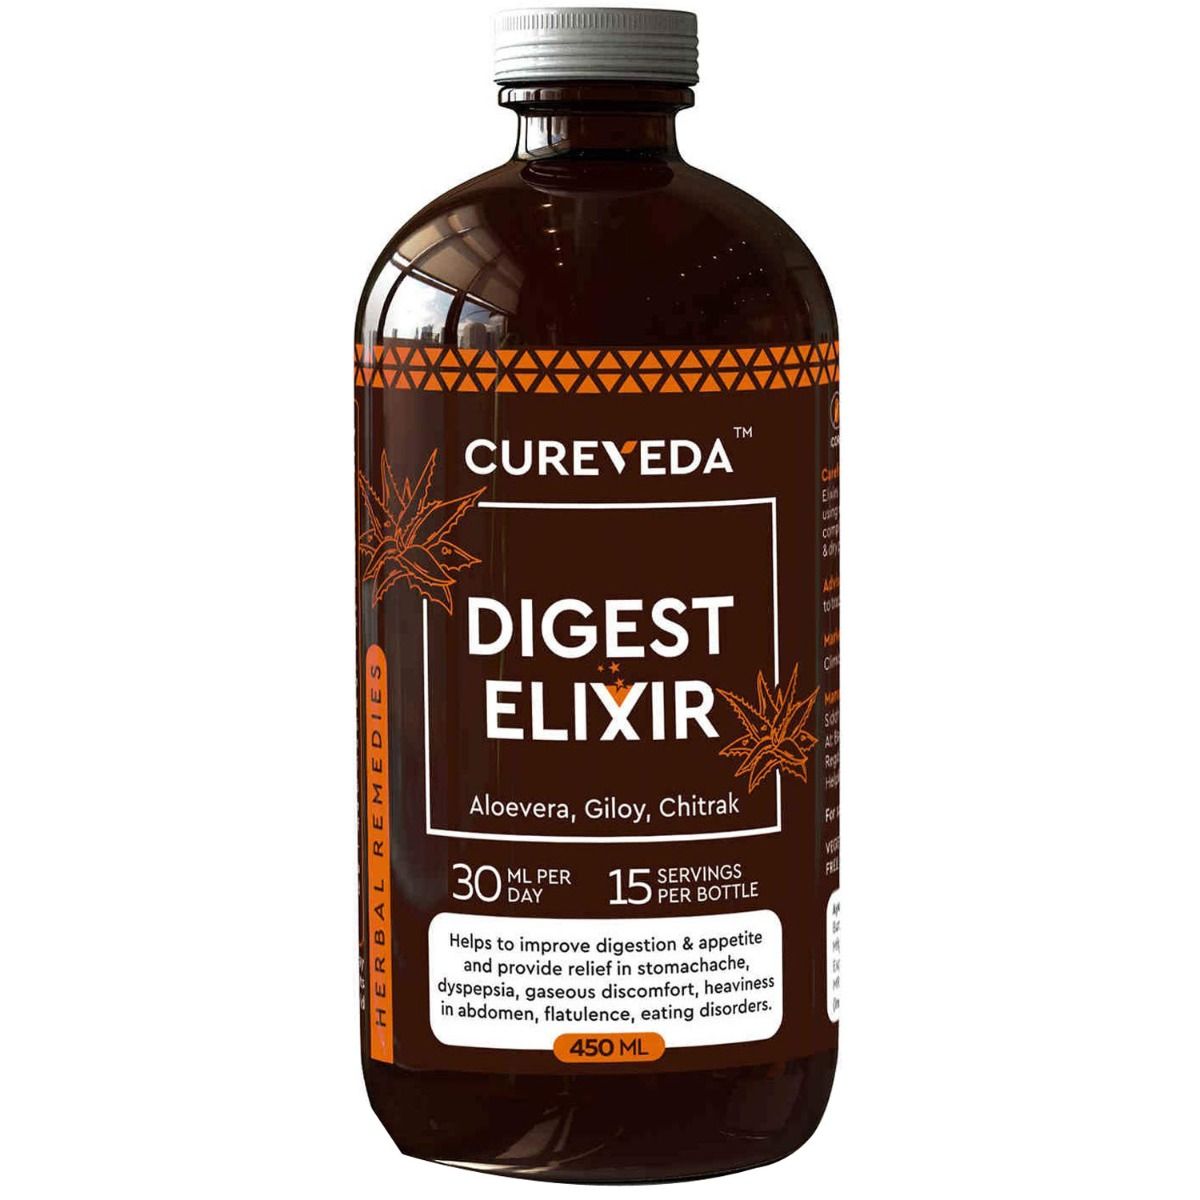 Buy Cureveda Digest Elixir, 450 ml Online